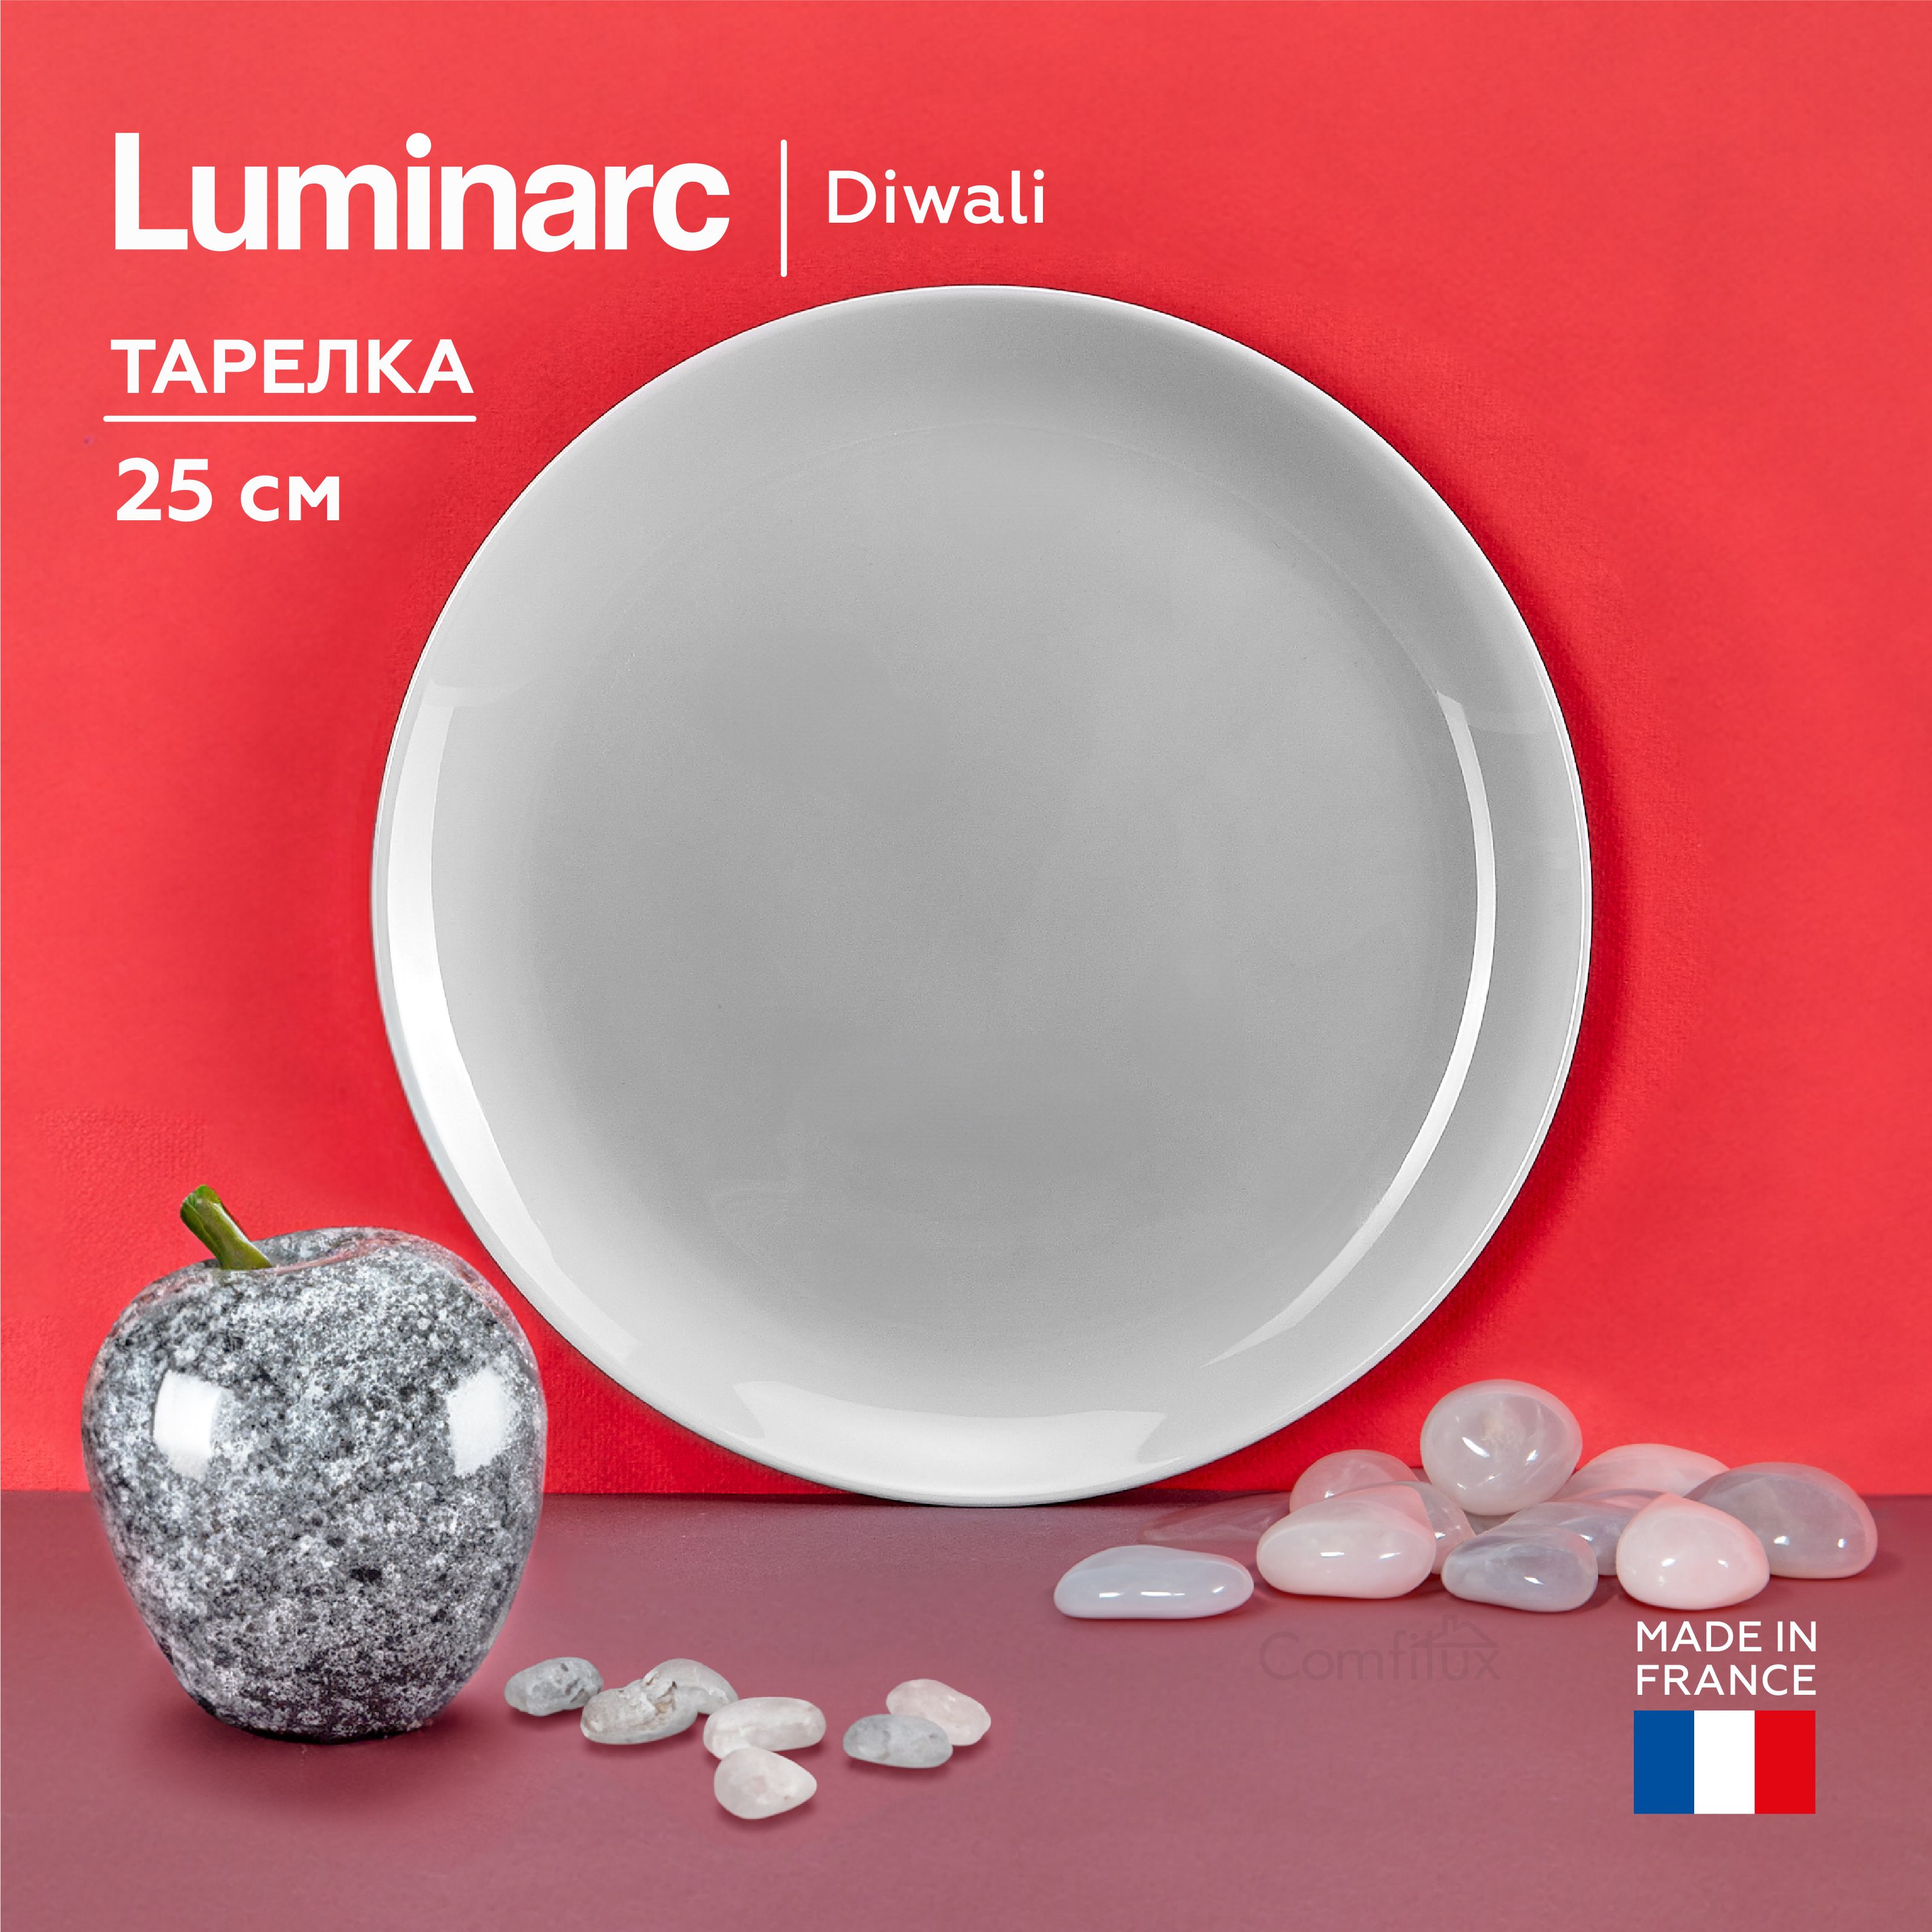 Посуда Luminarc Diwali Granit чашки. Diwali granit